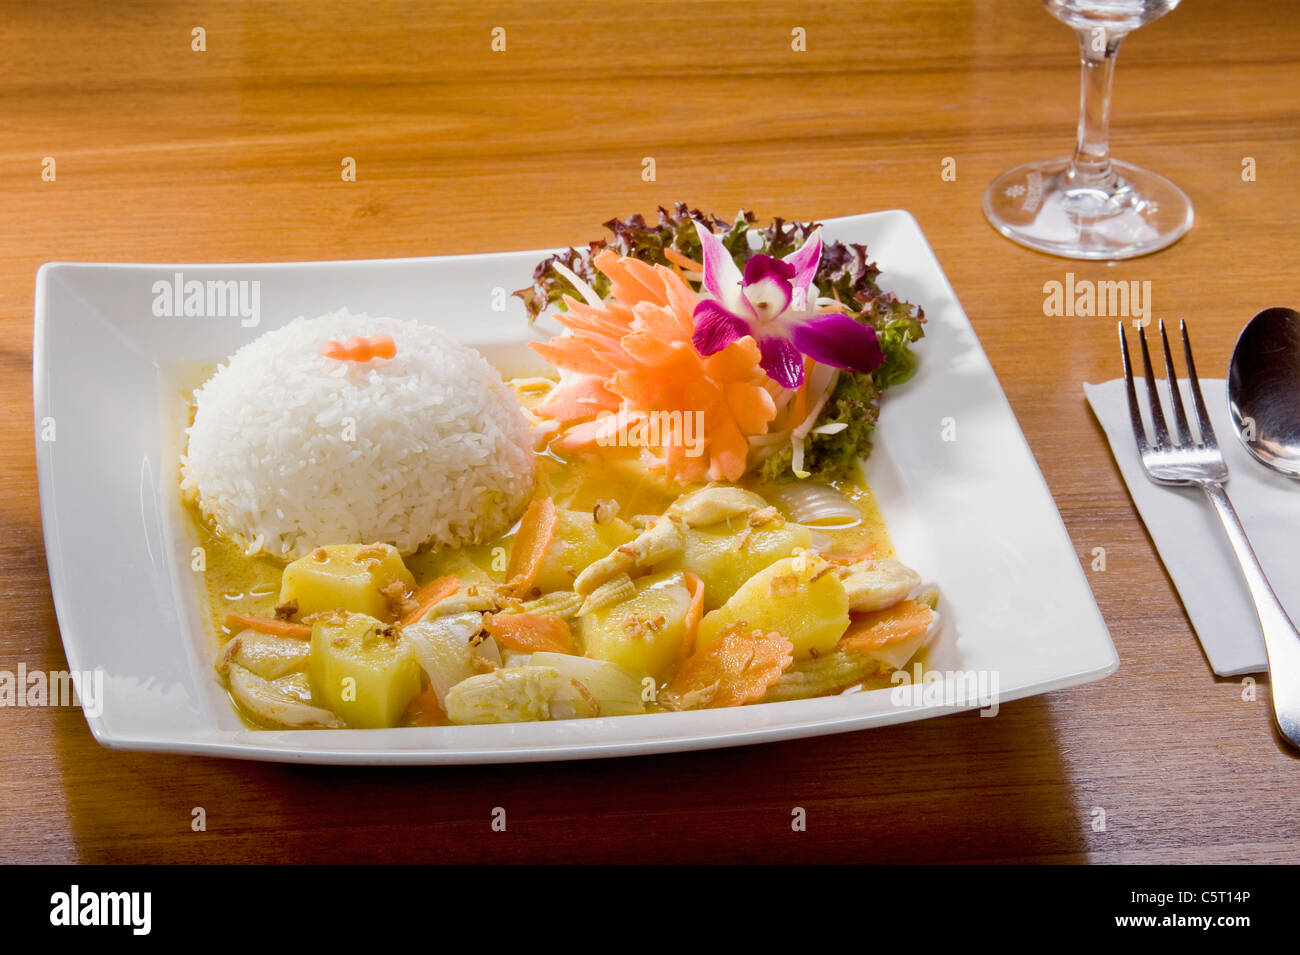 Deutschland, Bayern, München, Nahaufnahme von thailändisches Gericht mit gekochtem Reis Stockfoto